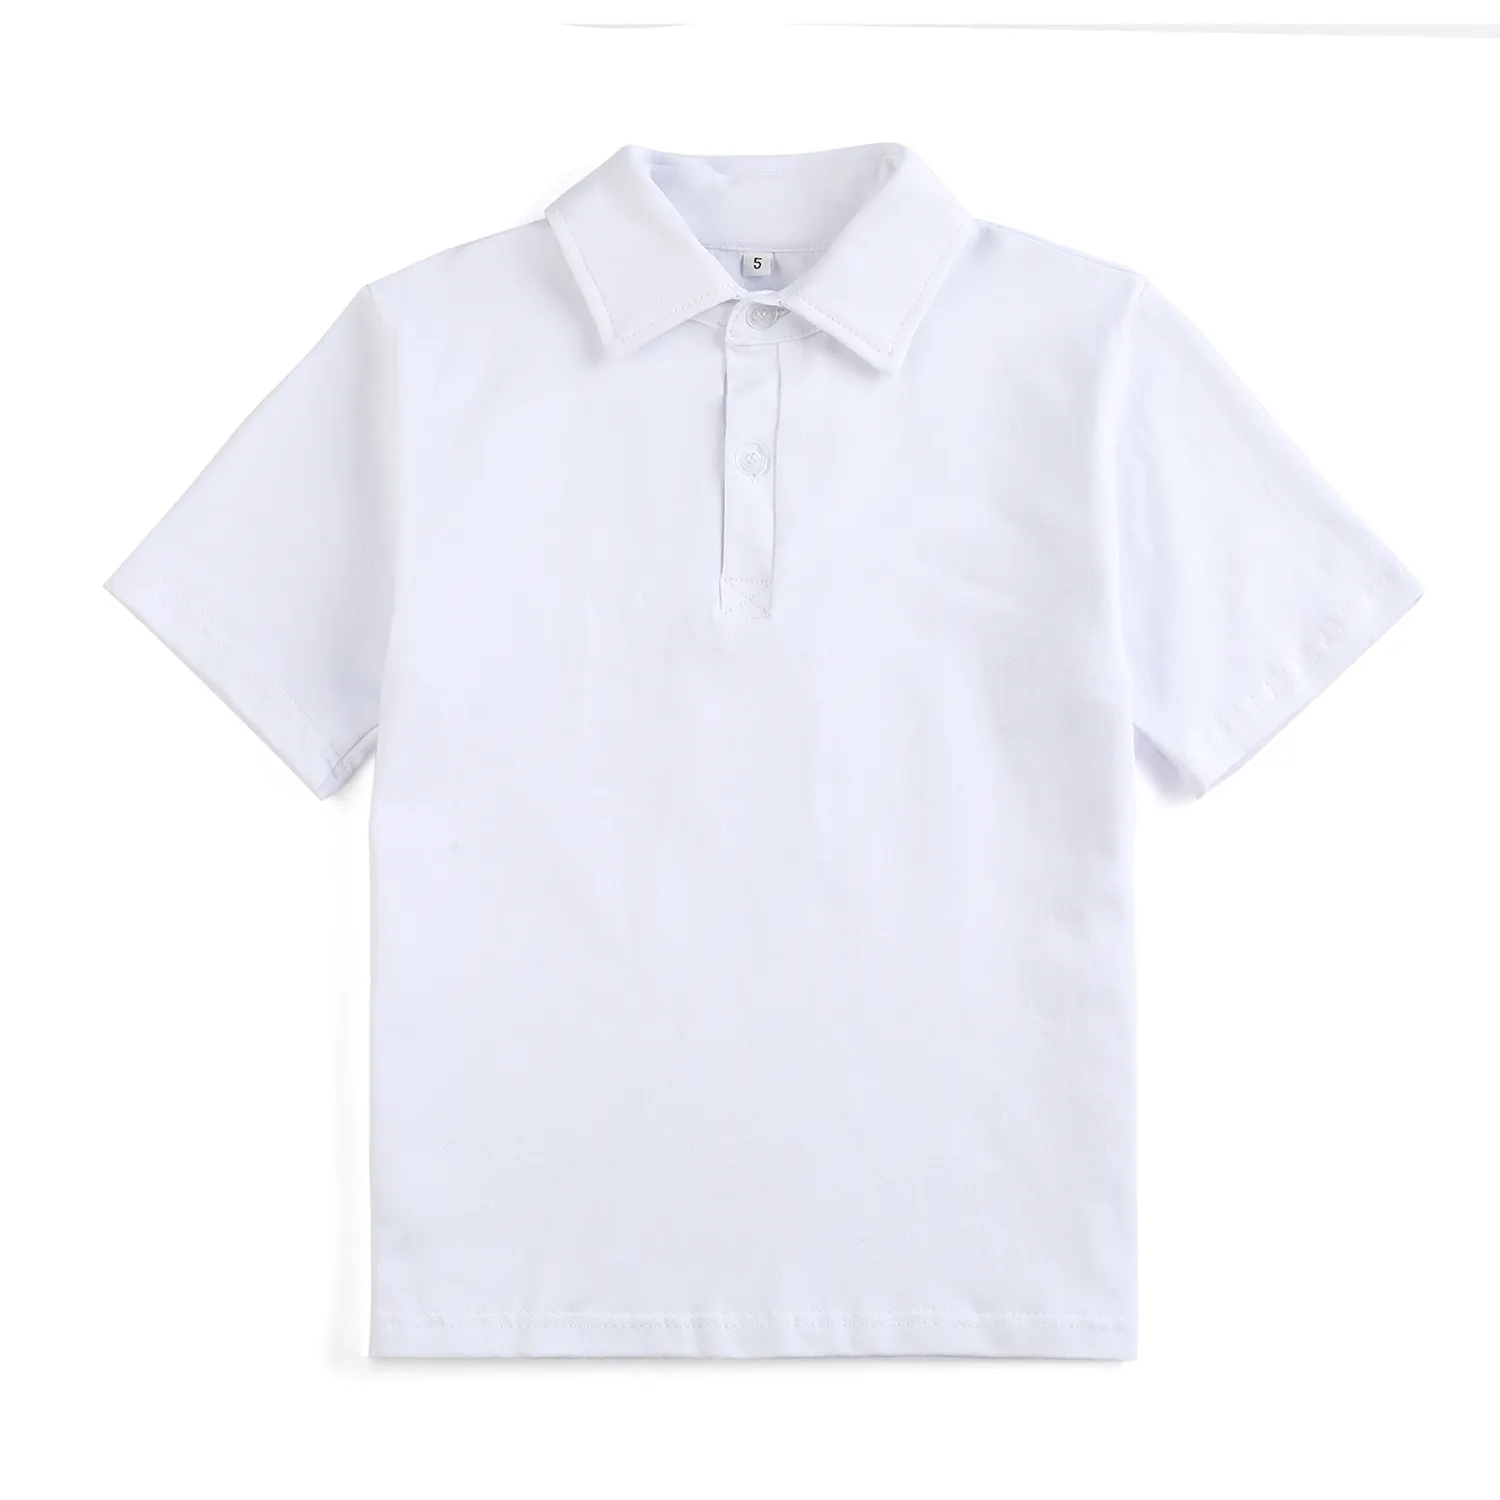 RTS गर्मियों बच्चा लड़कों लोकप्रिय जेब पोलो शैली कॉलर लघु आस्तीन छोटे लड़के टी शर्ट